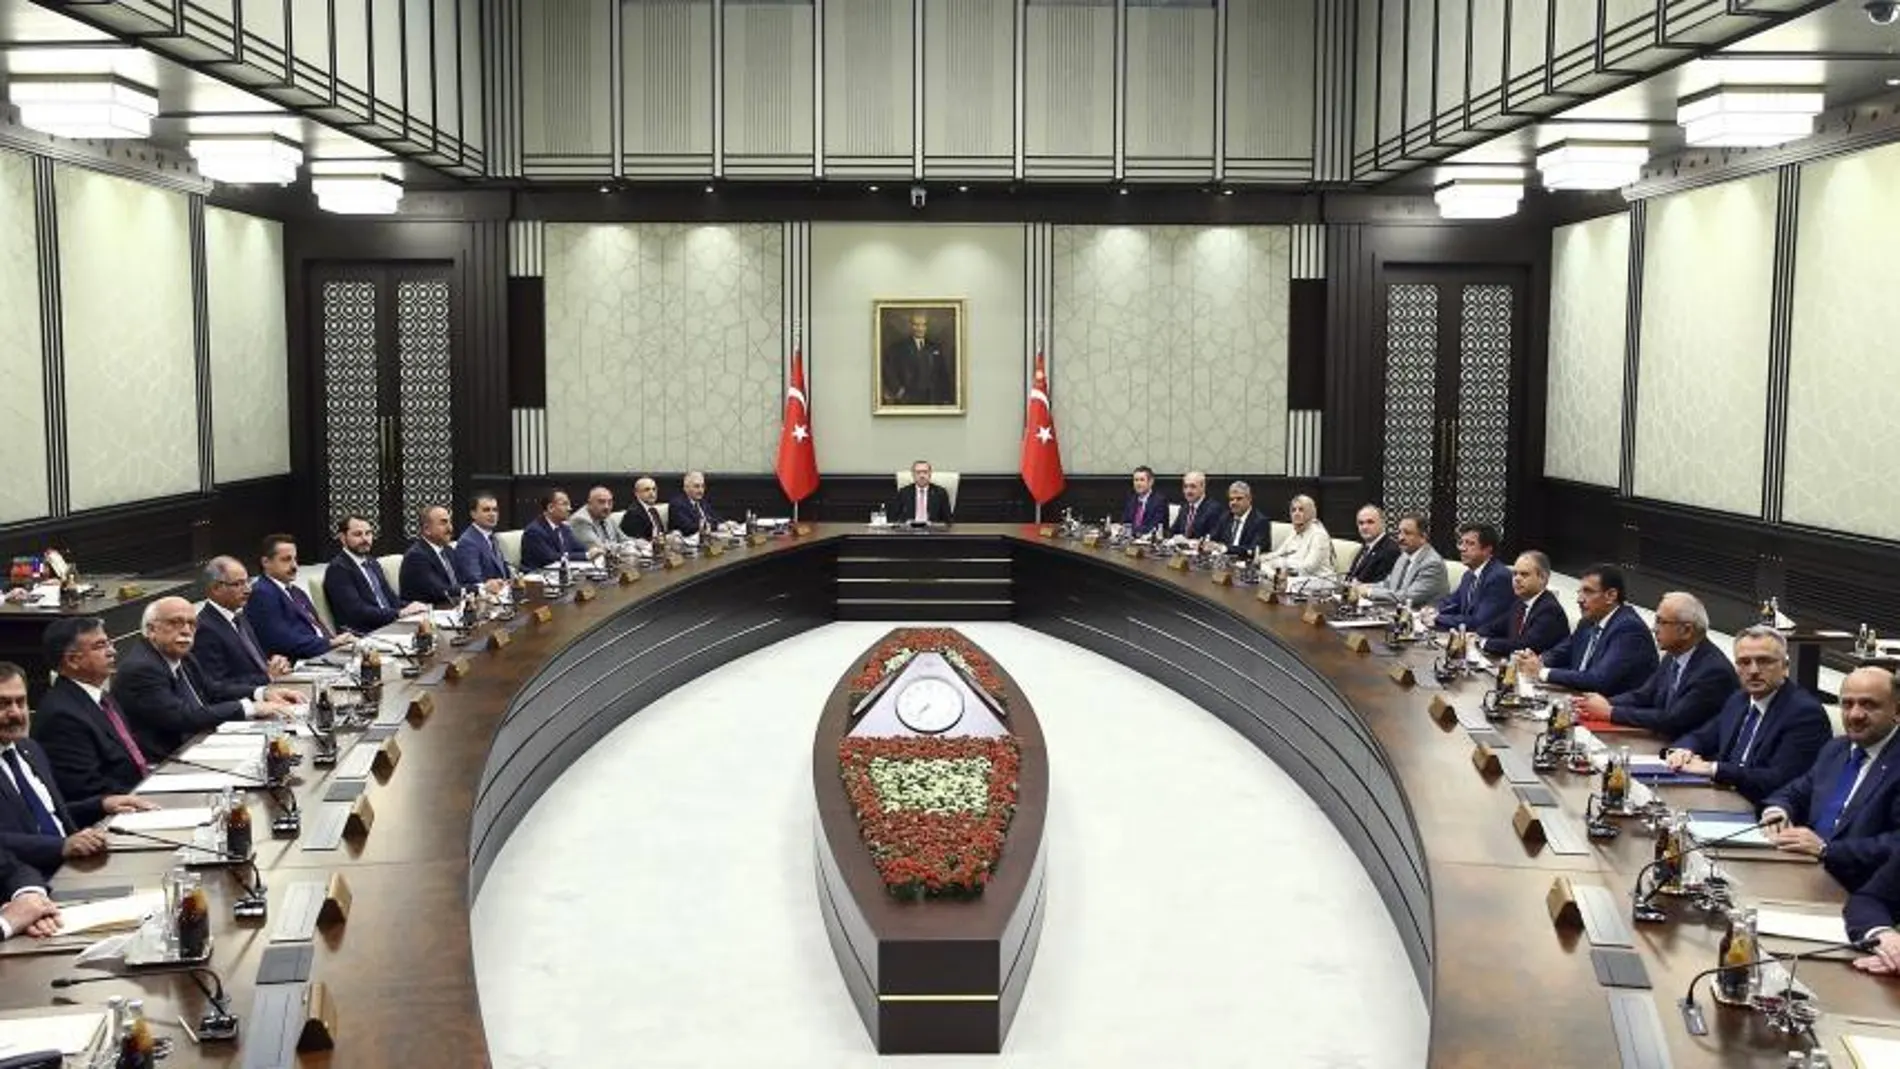 Fotografía facilitada por la oficina de prensa de la Presidencia turca, que muestra al presidente de Turquía, Recep Tayyip Erdogan, durante una reunión con su gabinete de en Ankara